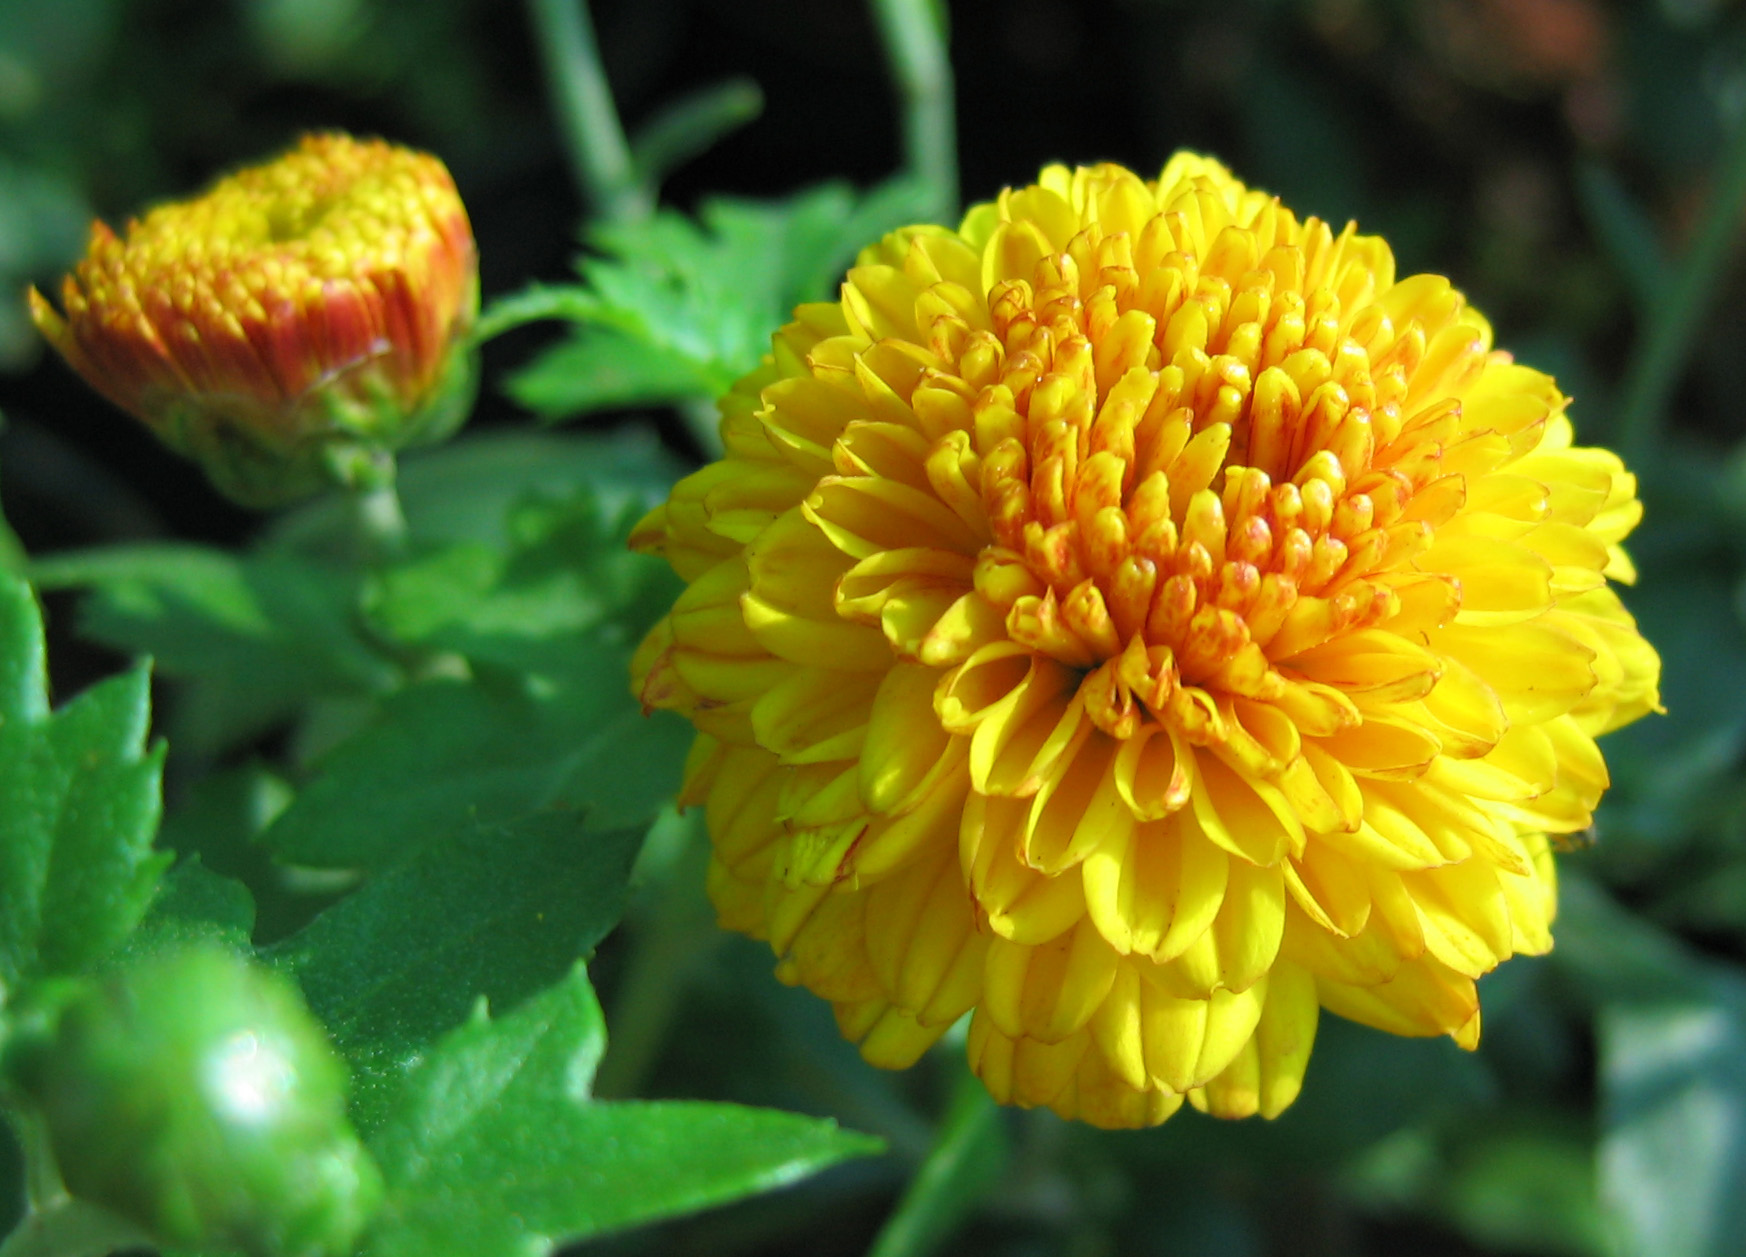 Yellow Flowers | File:Yellow Flowers (3).jpg - Wikimedia Commons ...